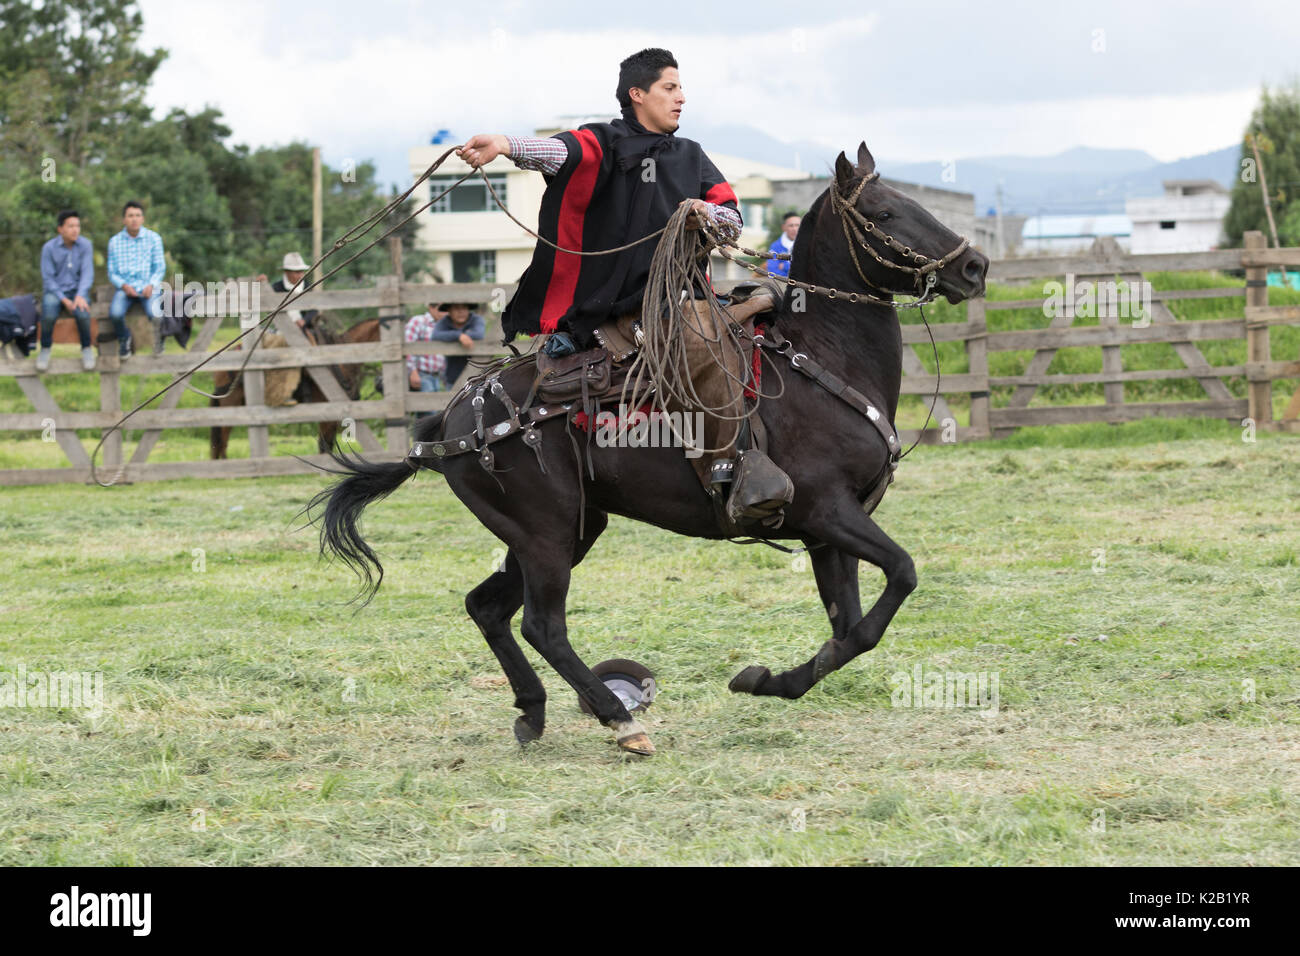 3 juin 2017, l'Équateur Machachi : cowboy appelé 'chagra' dans les ANdes à cheval tout en maintenant un lasso Banque D'Images